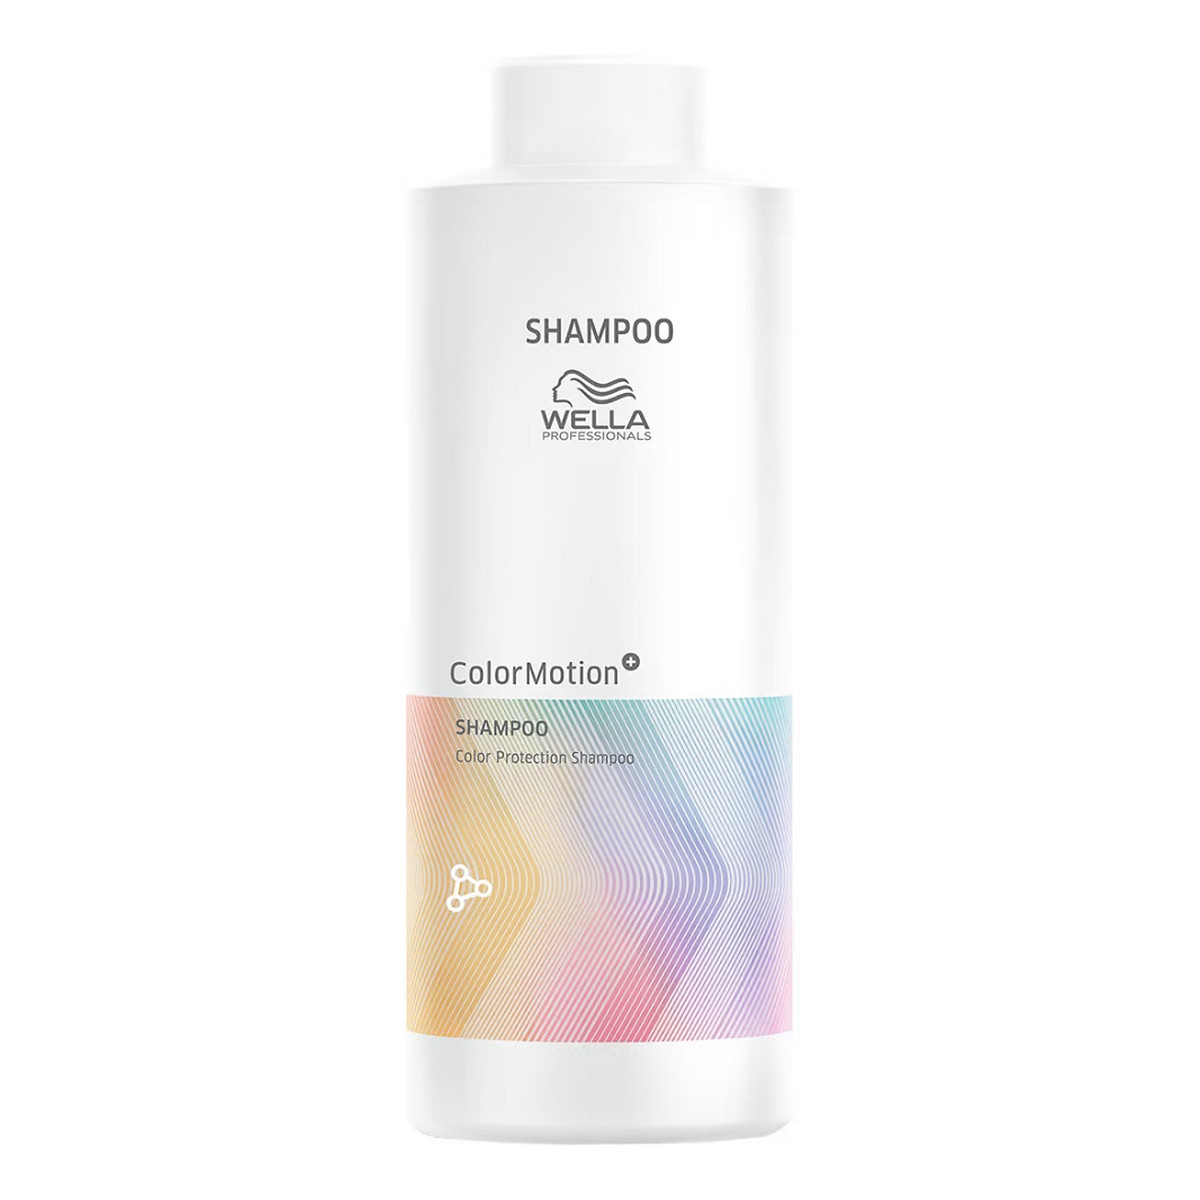 Wella Professionals Colormotion+ shampoo szampon chroniący kolor włosów 500ml